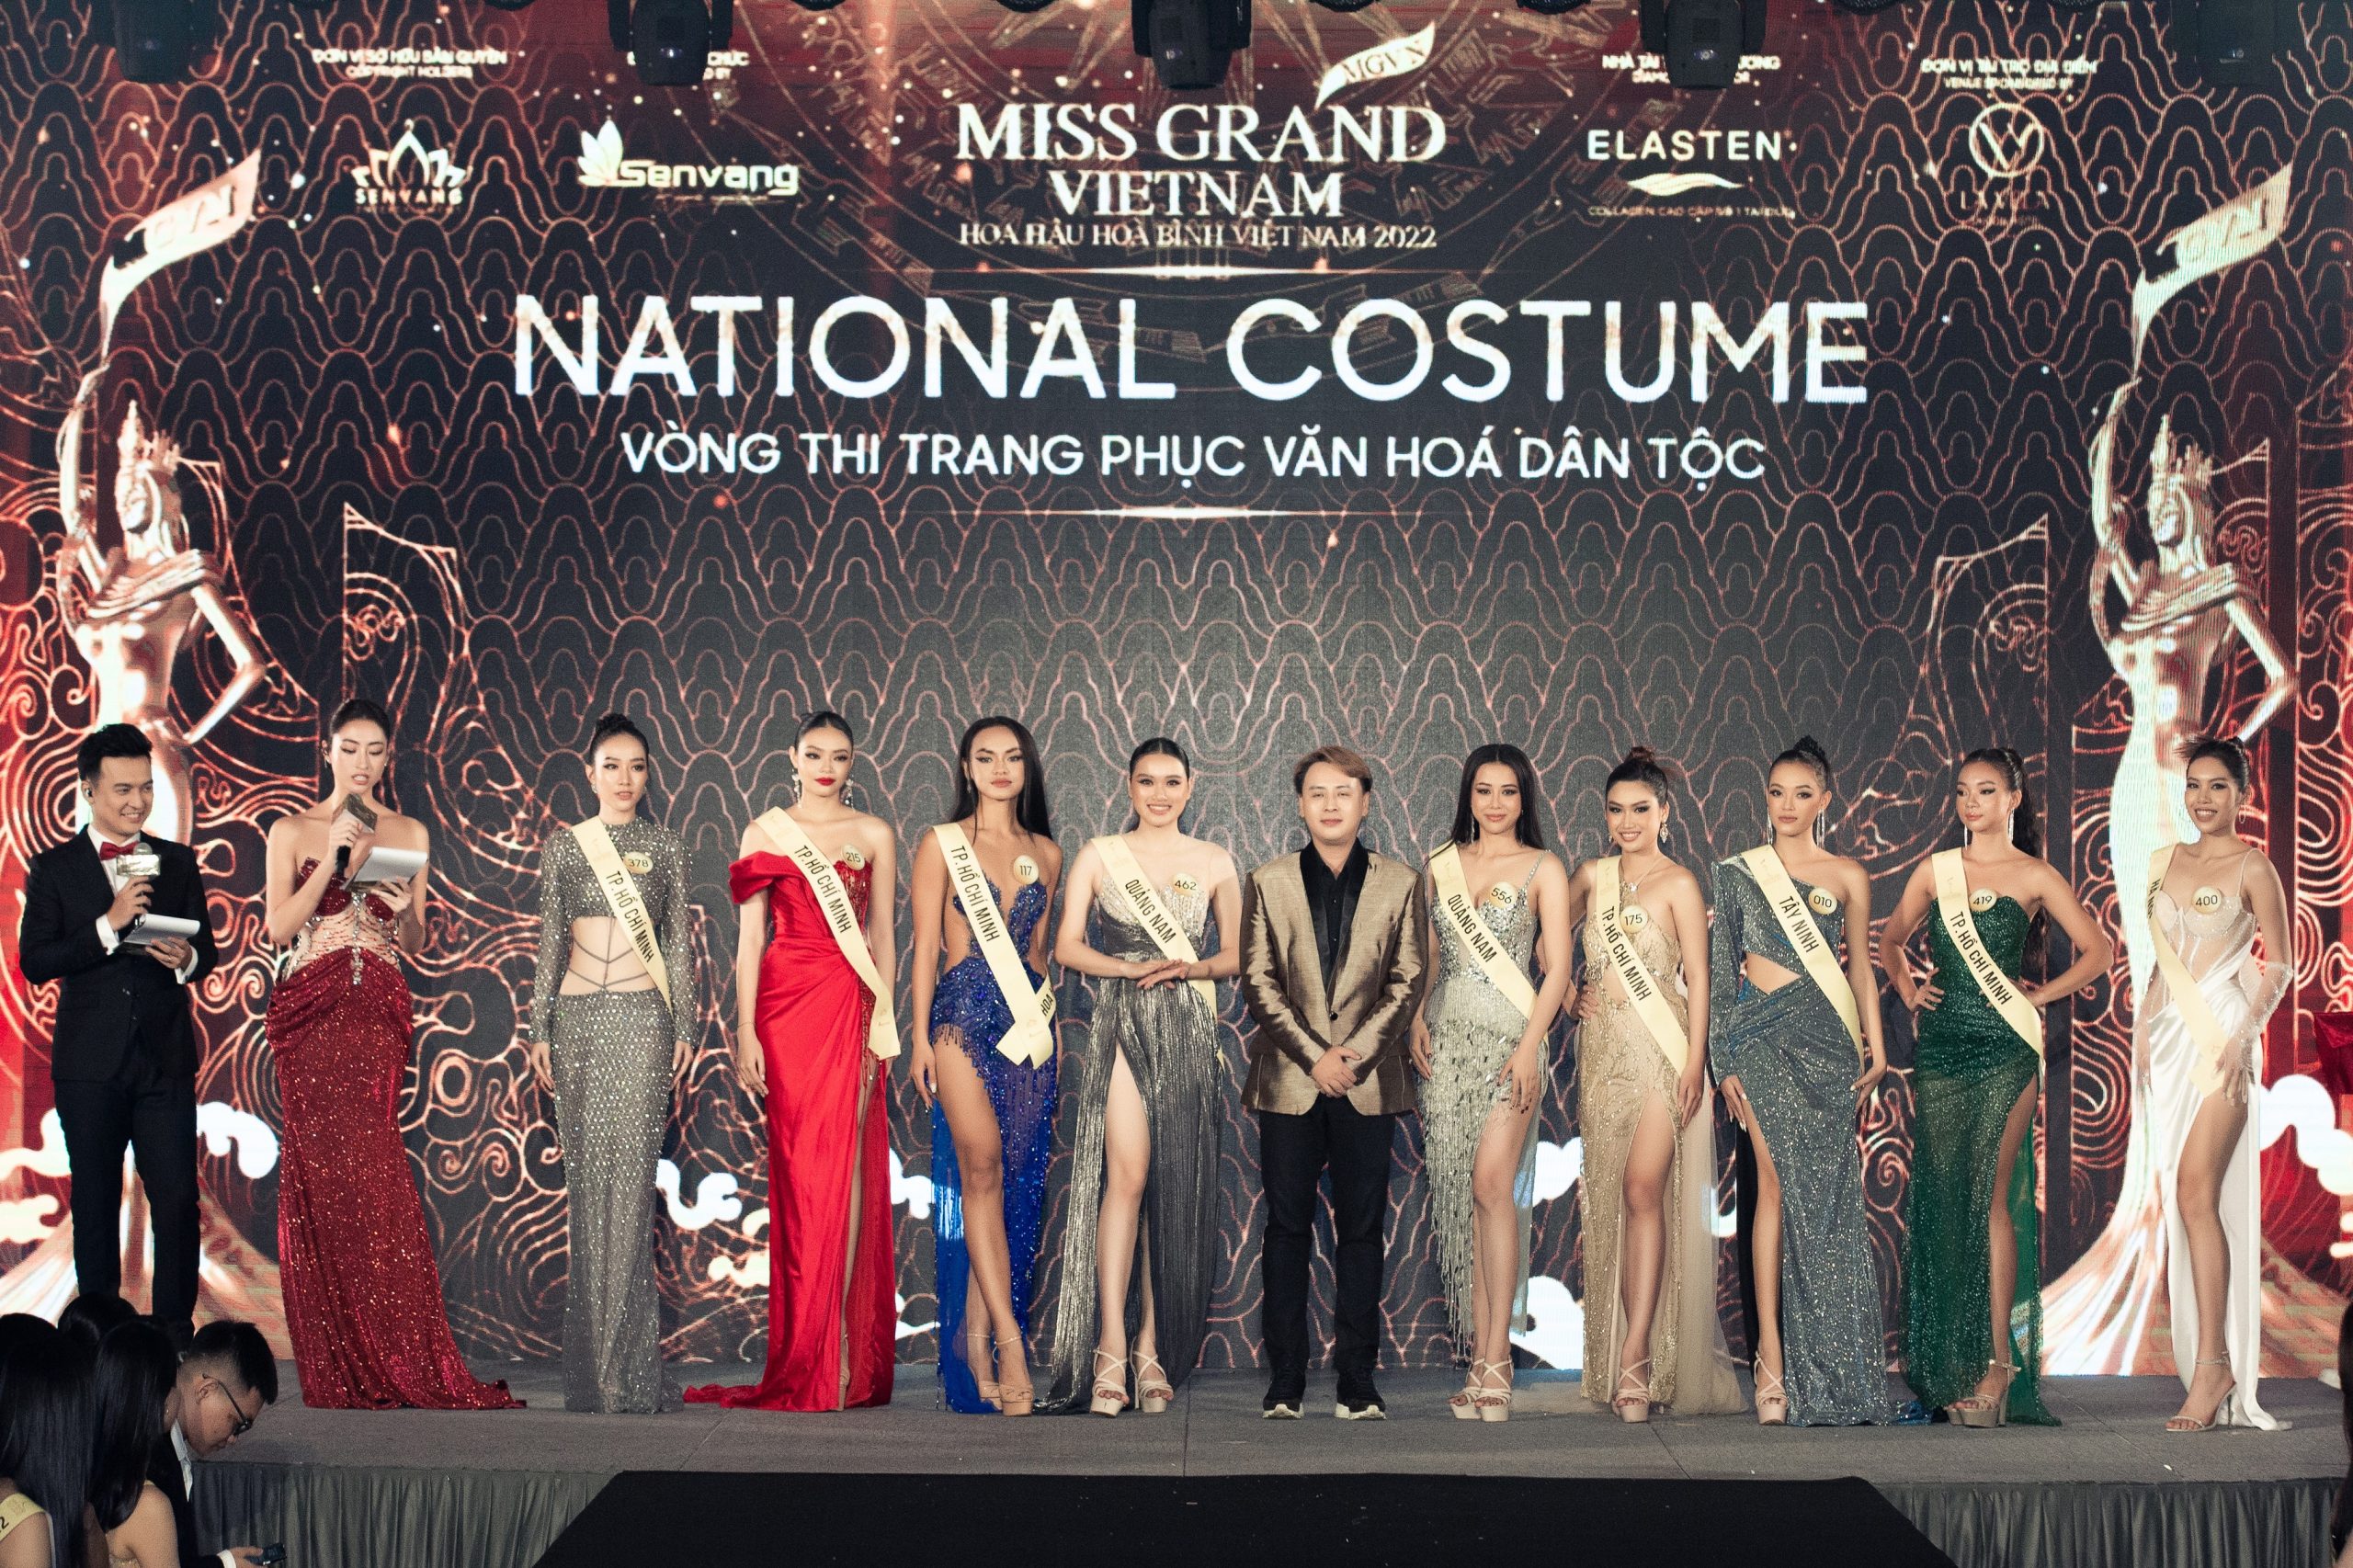 Harper's Bazaar_ Miss Grand Vietnam 2022 công bố top thí sinh vào chung kết_08